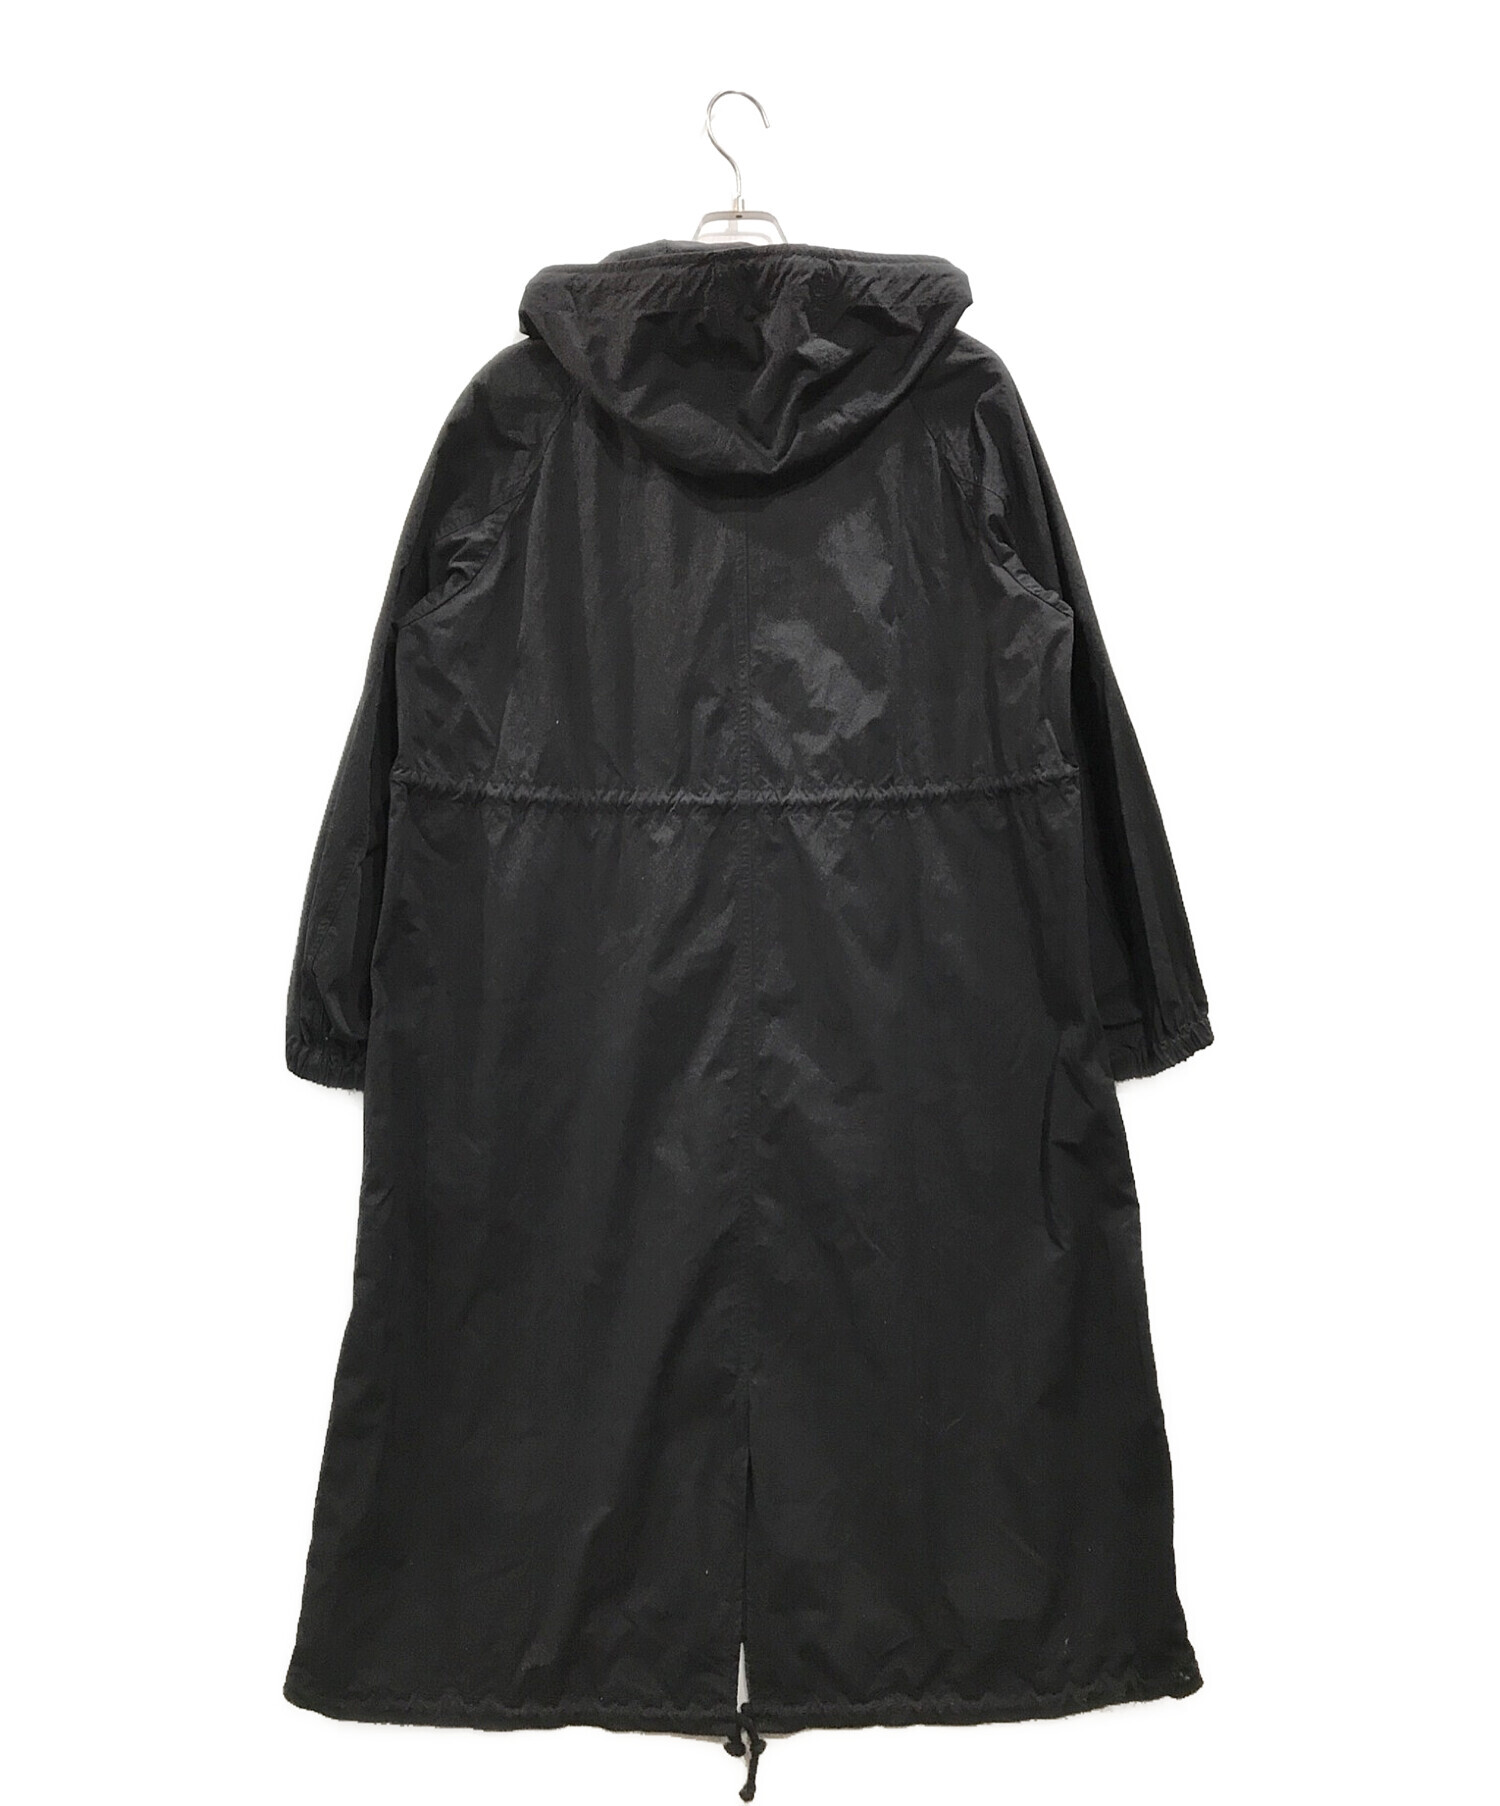 Ron Herman (ロンハーマン) Washer Mods Coat ブラック サイズ:S